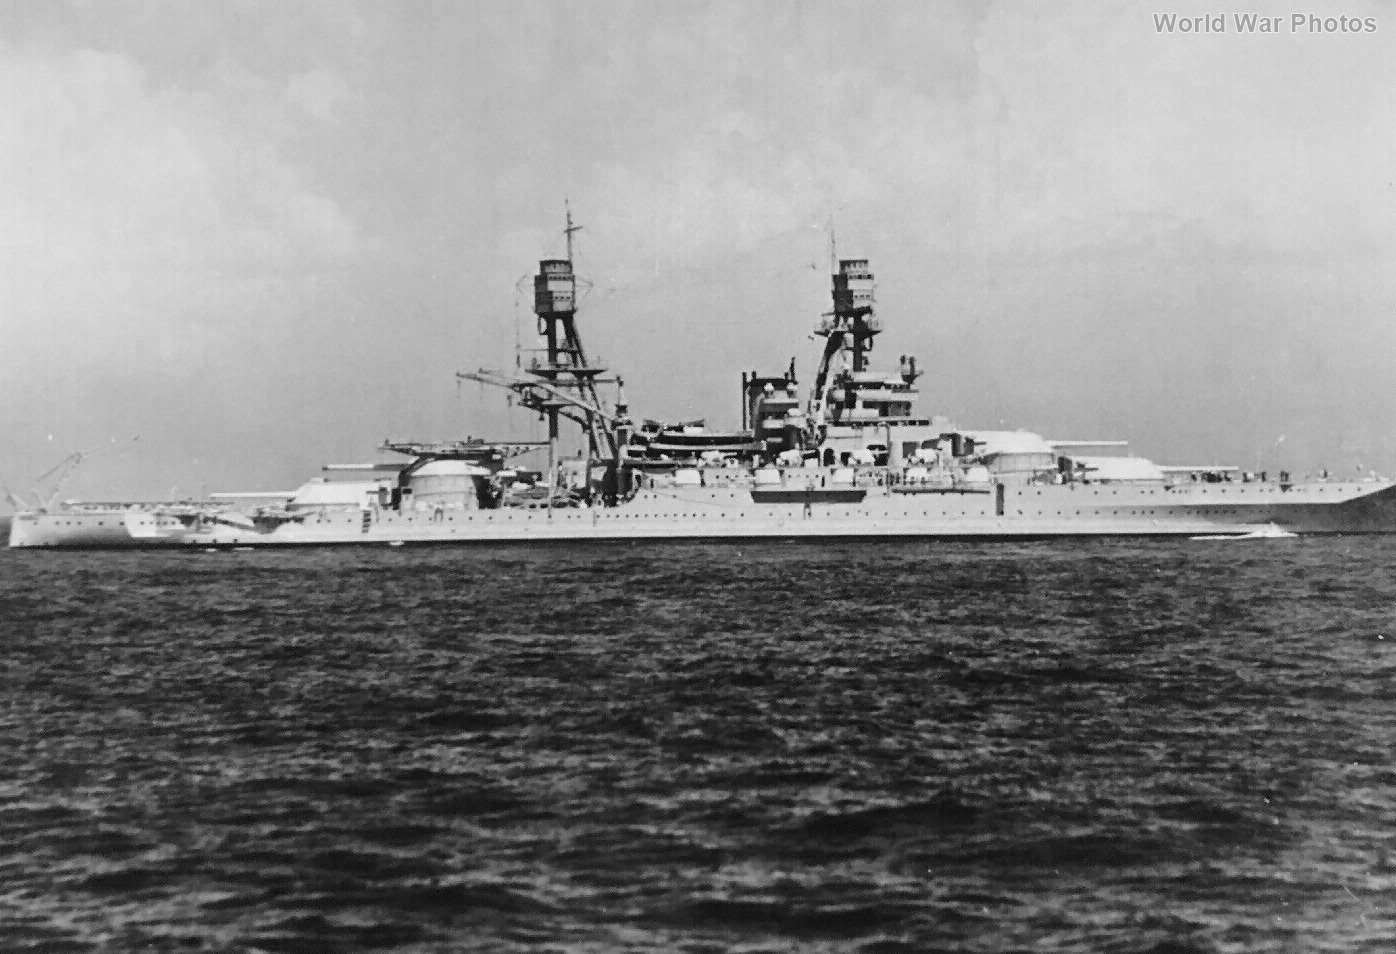 Battleship Uss Arizona 2 World War Photos